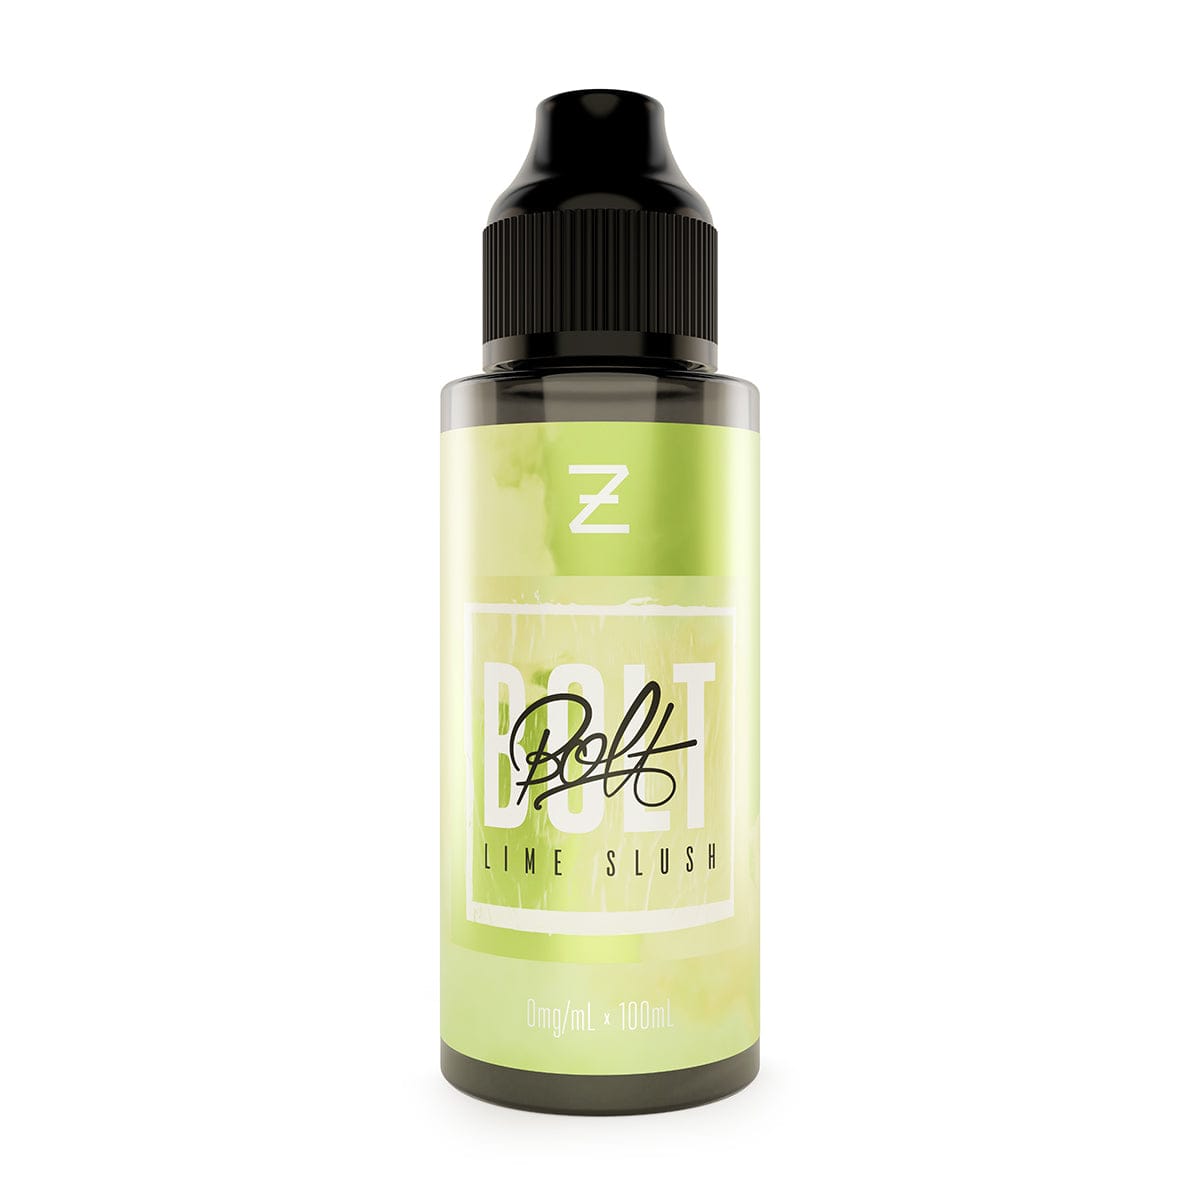 Zeus Juice Shortfill Eliquids Lime Slush / 100ml Zeus Juice Bolt Shortfill E-Liquids